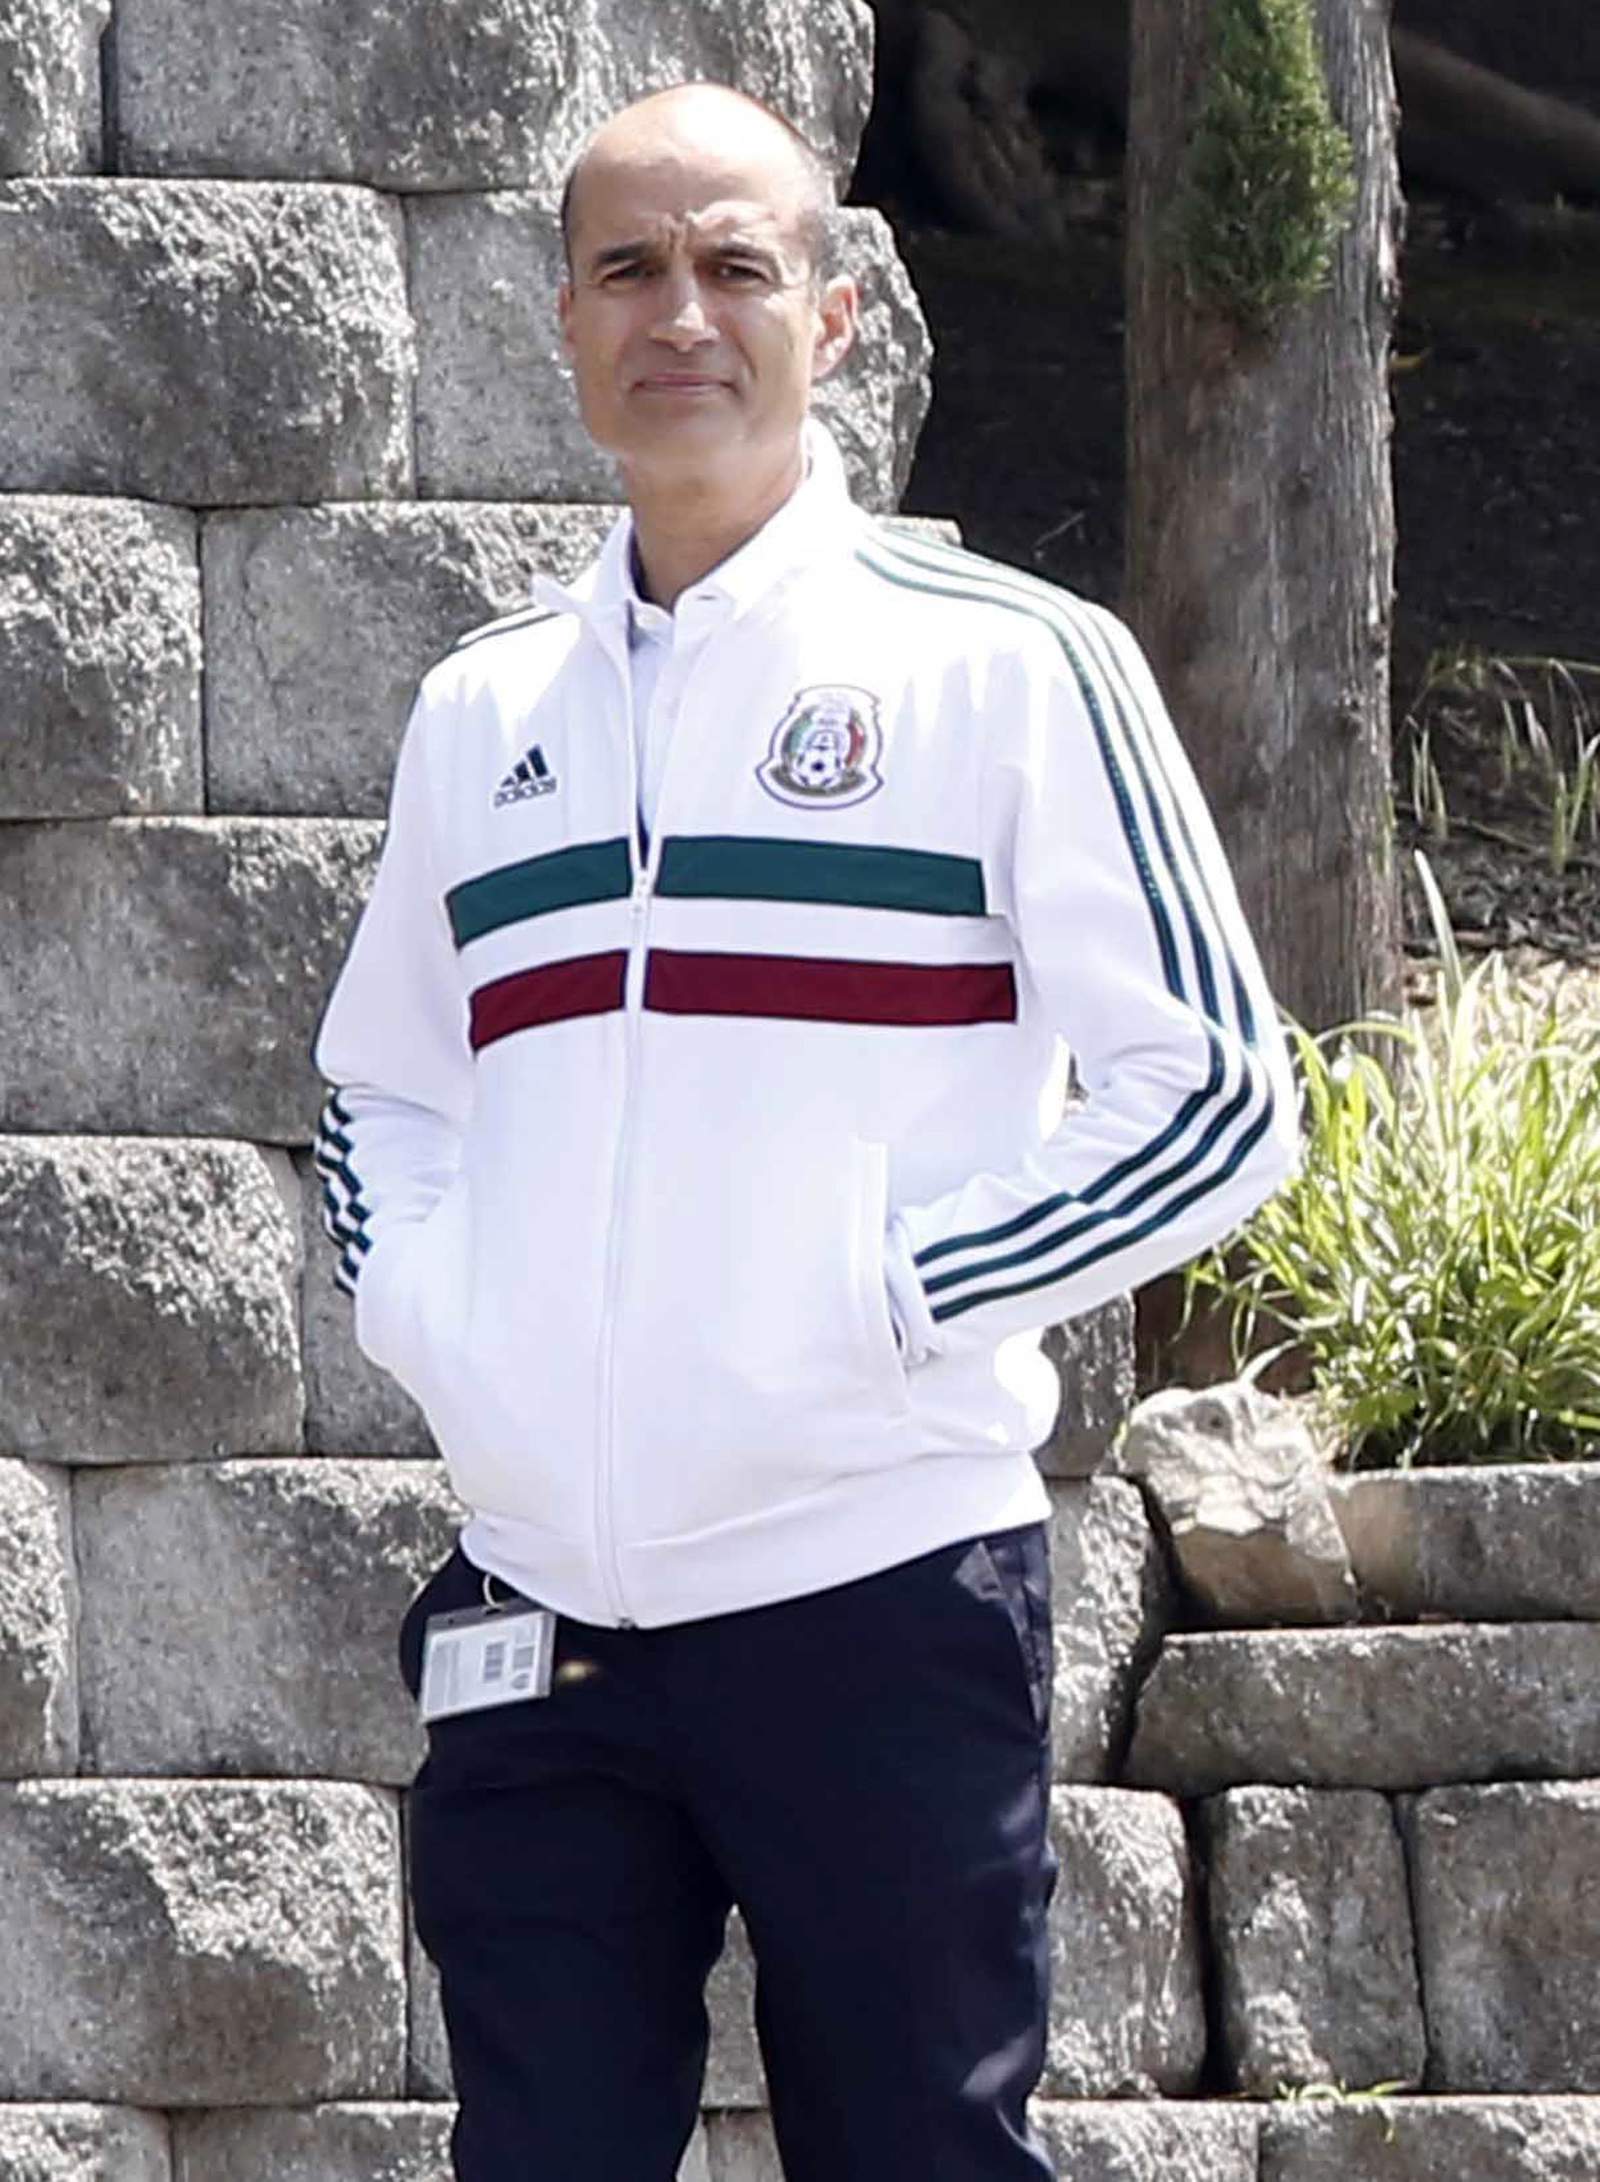 Guillermo Cantú, director general deportivo de la FMF, aseguró que se trabaja en resolver el inconveniente con los seleccionados. (ARCHIVO)